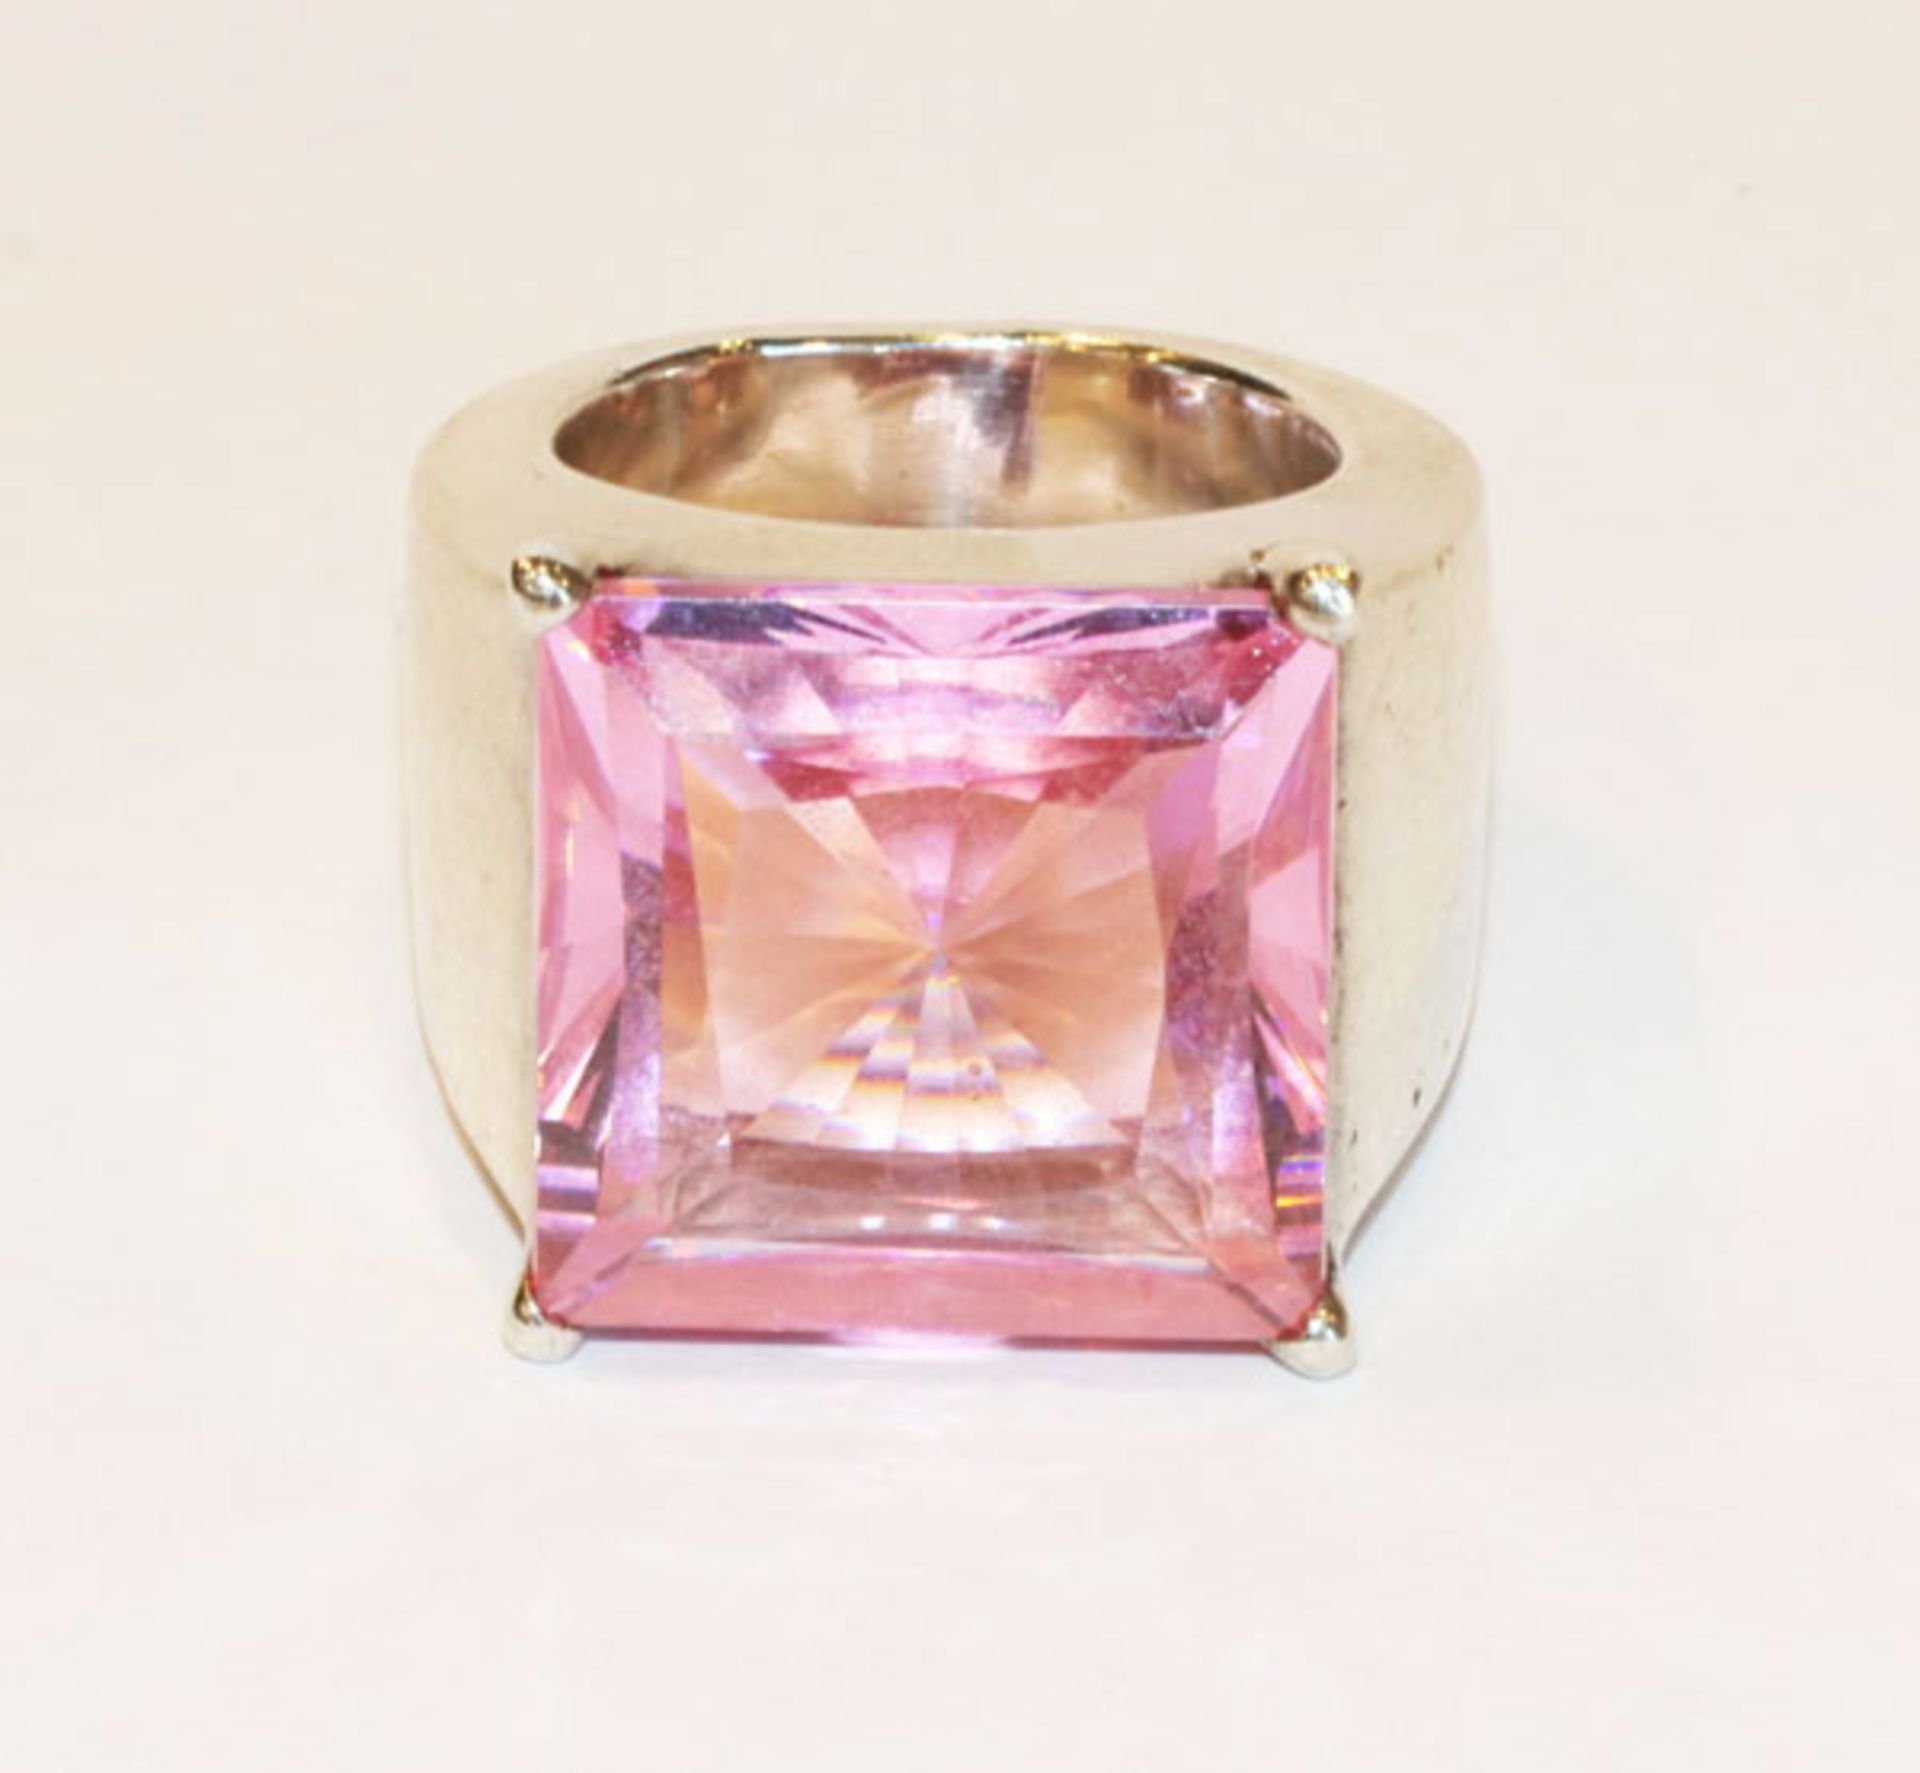 Sterlingsilber Ring mit rosa Glasstein, signiert Thomas Sabo, 39 gr., Gr. 55